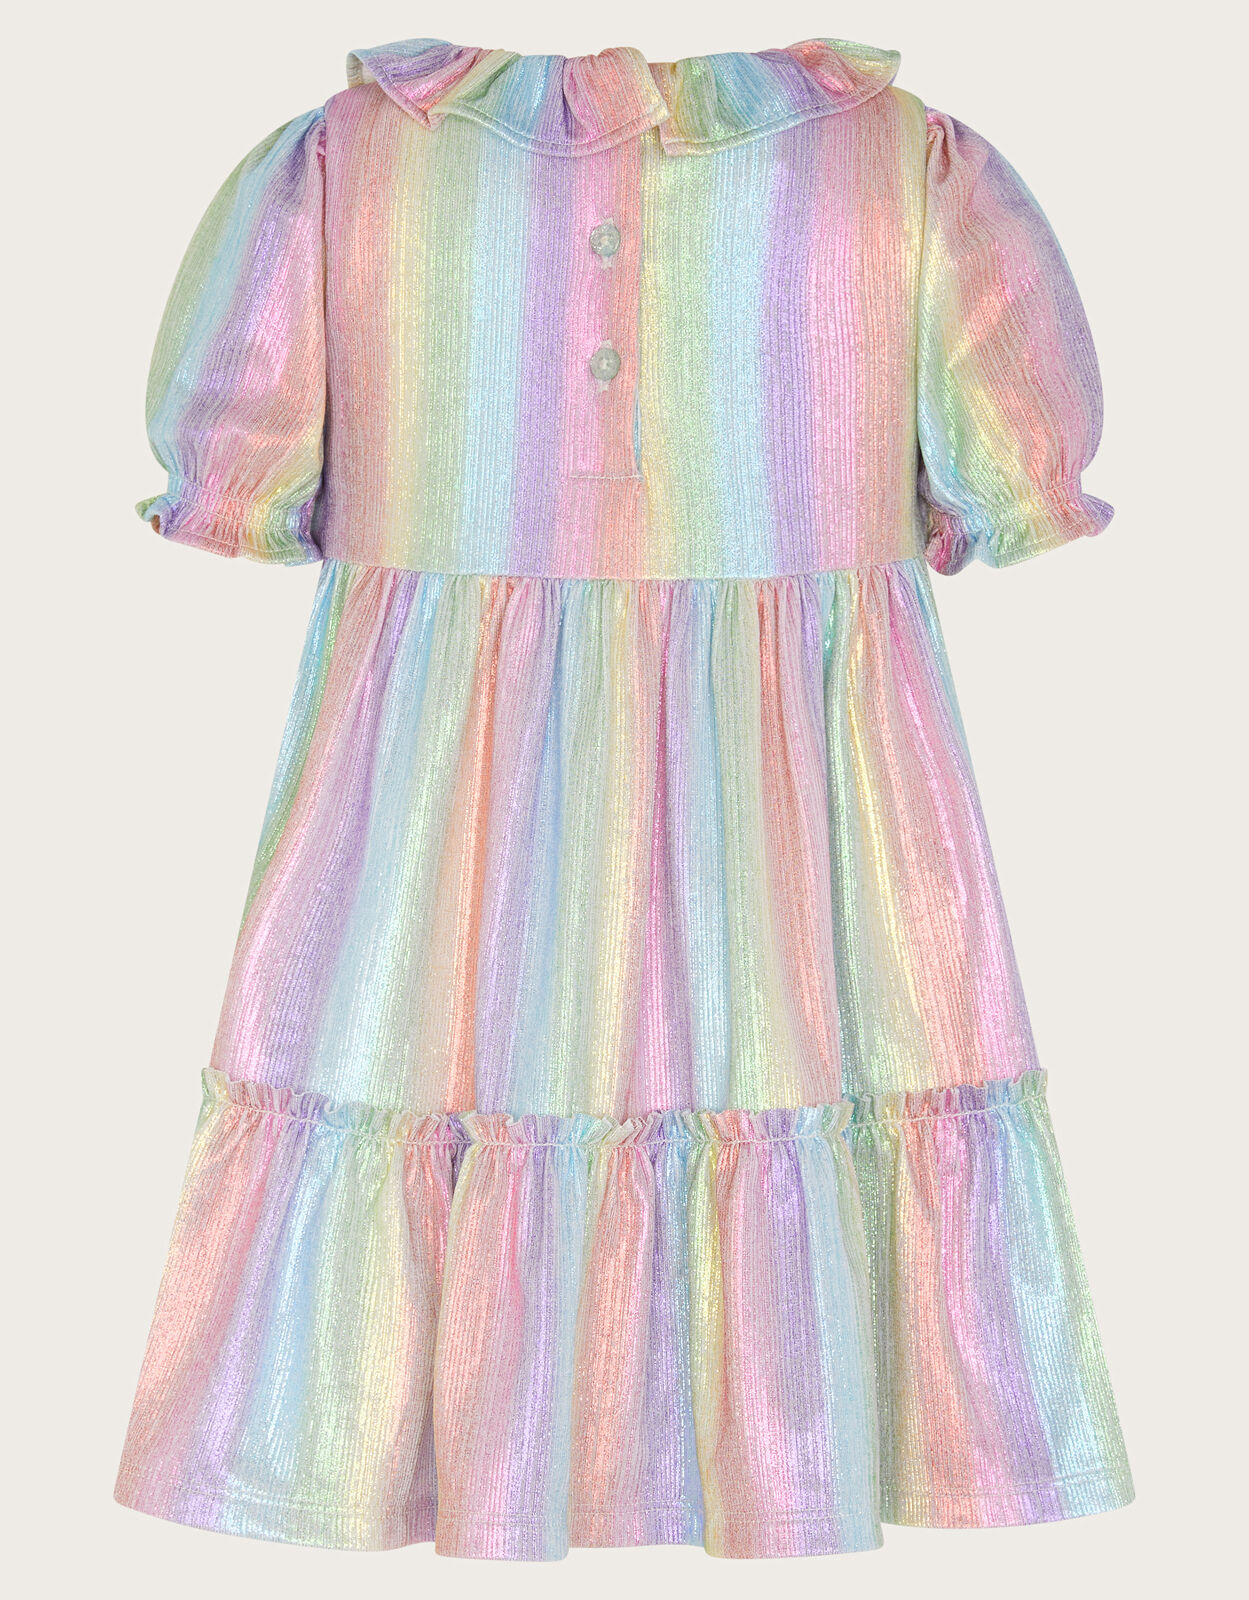 Buy Rainbow Dress Pastel Unicorn Tutu Dress Unicorn Full Length Dress  Pastel Rainbow Flower Girl Dress Rainbow Unicorn Girls Dress Online in  India - Etsy